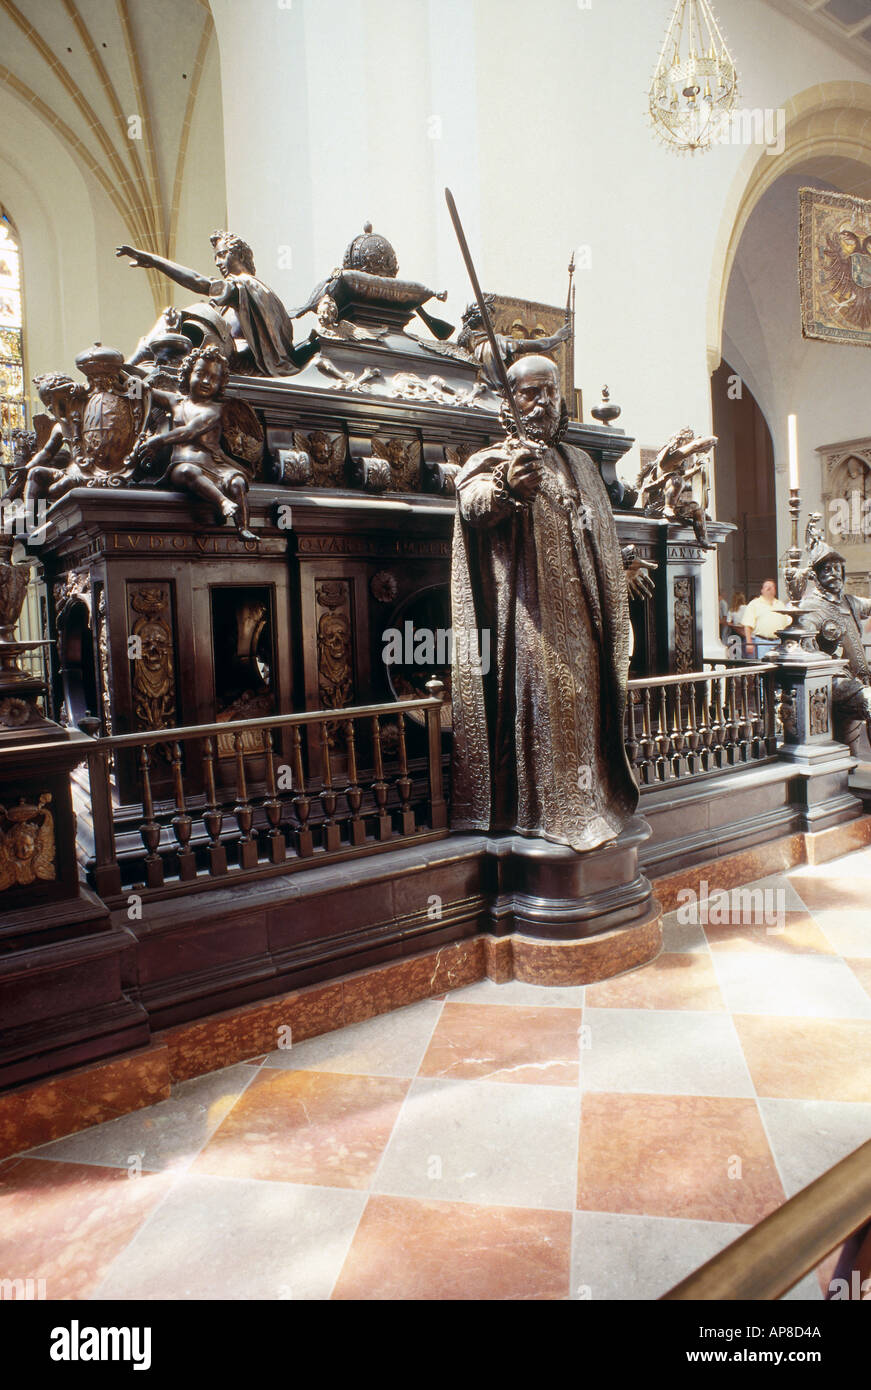 Statue alla tomba, tomba monumento dell Imperatore Ludovico IV, Frauenkirche di Monaco, Monaco di Baviera, Germania Foto Stock